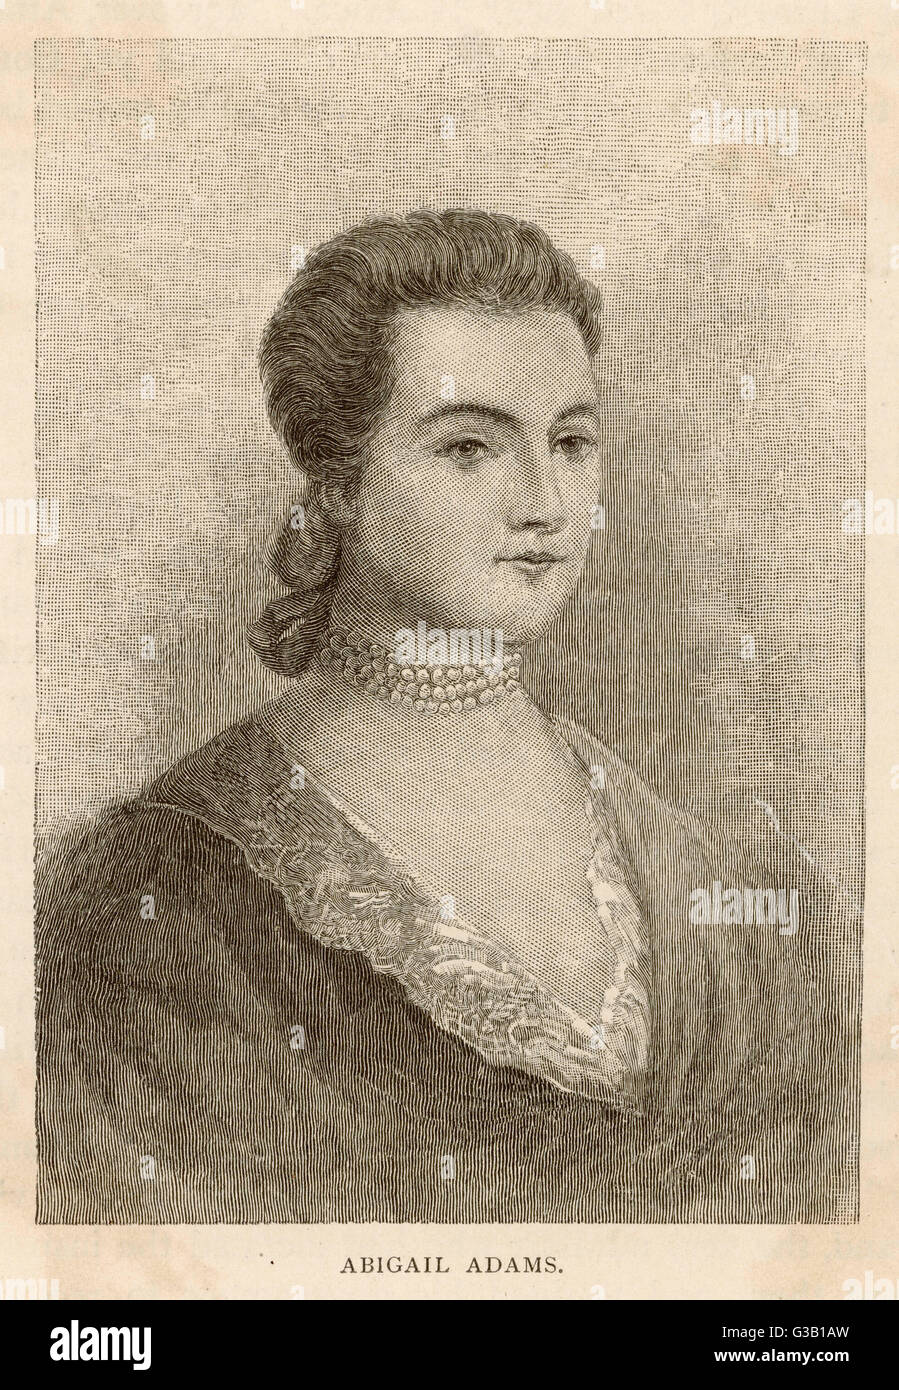 ABIGAIL ADAMS geb. Smith. US-amerikanische Schriftstellerin und Ehefrau von John Adams, 2. Präsident der Vereinigten Staaten.     Datum: 1744-1818 Stockfoto